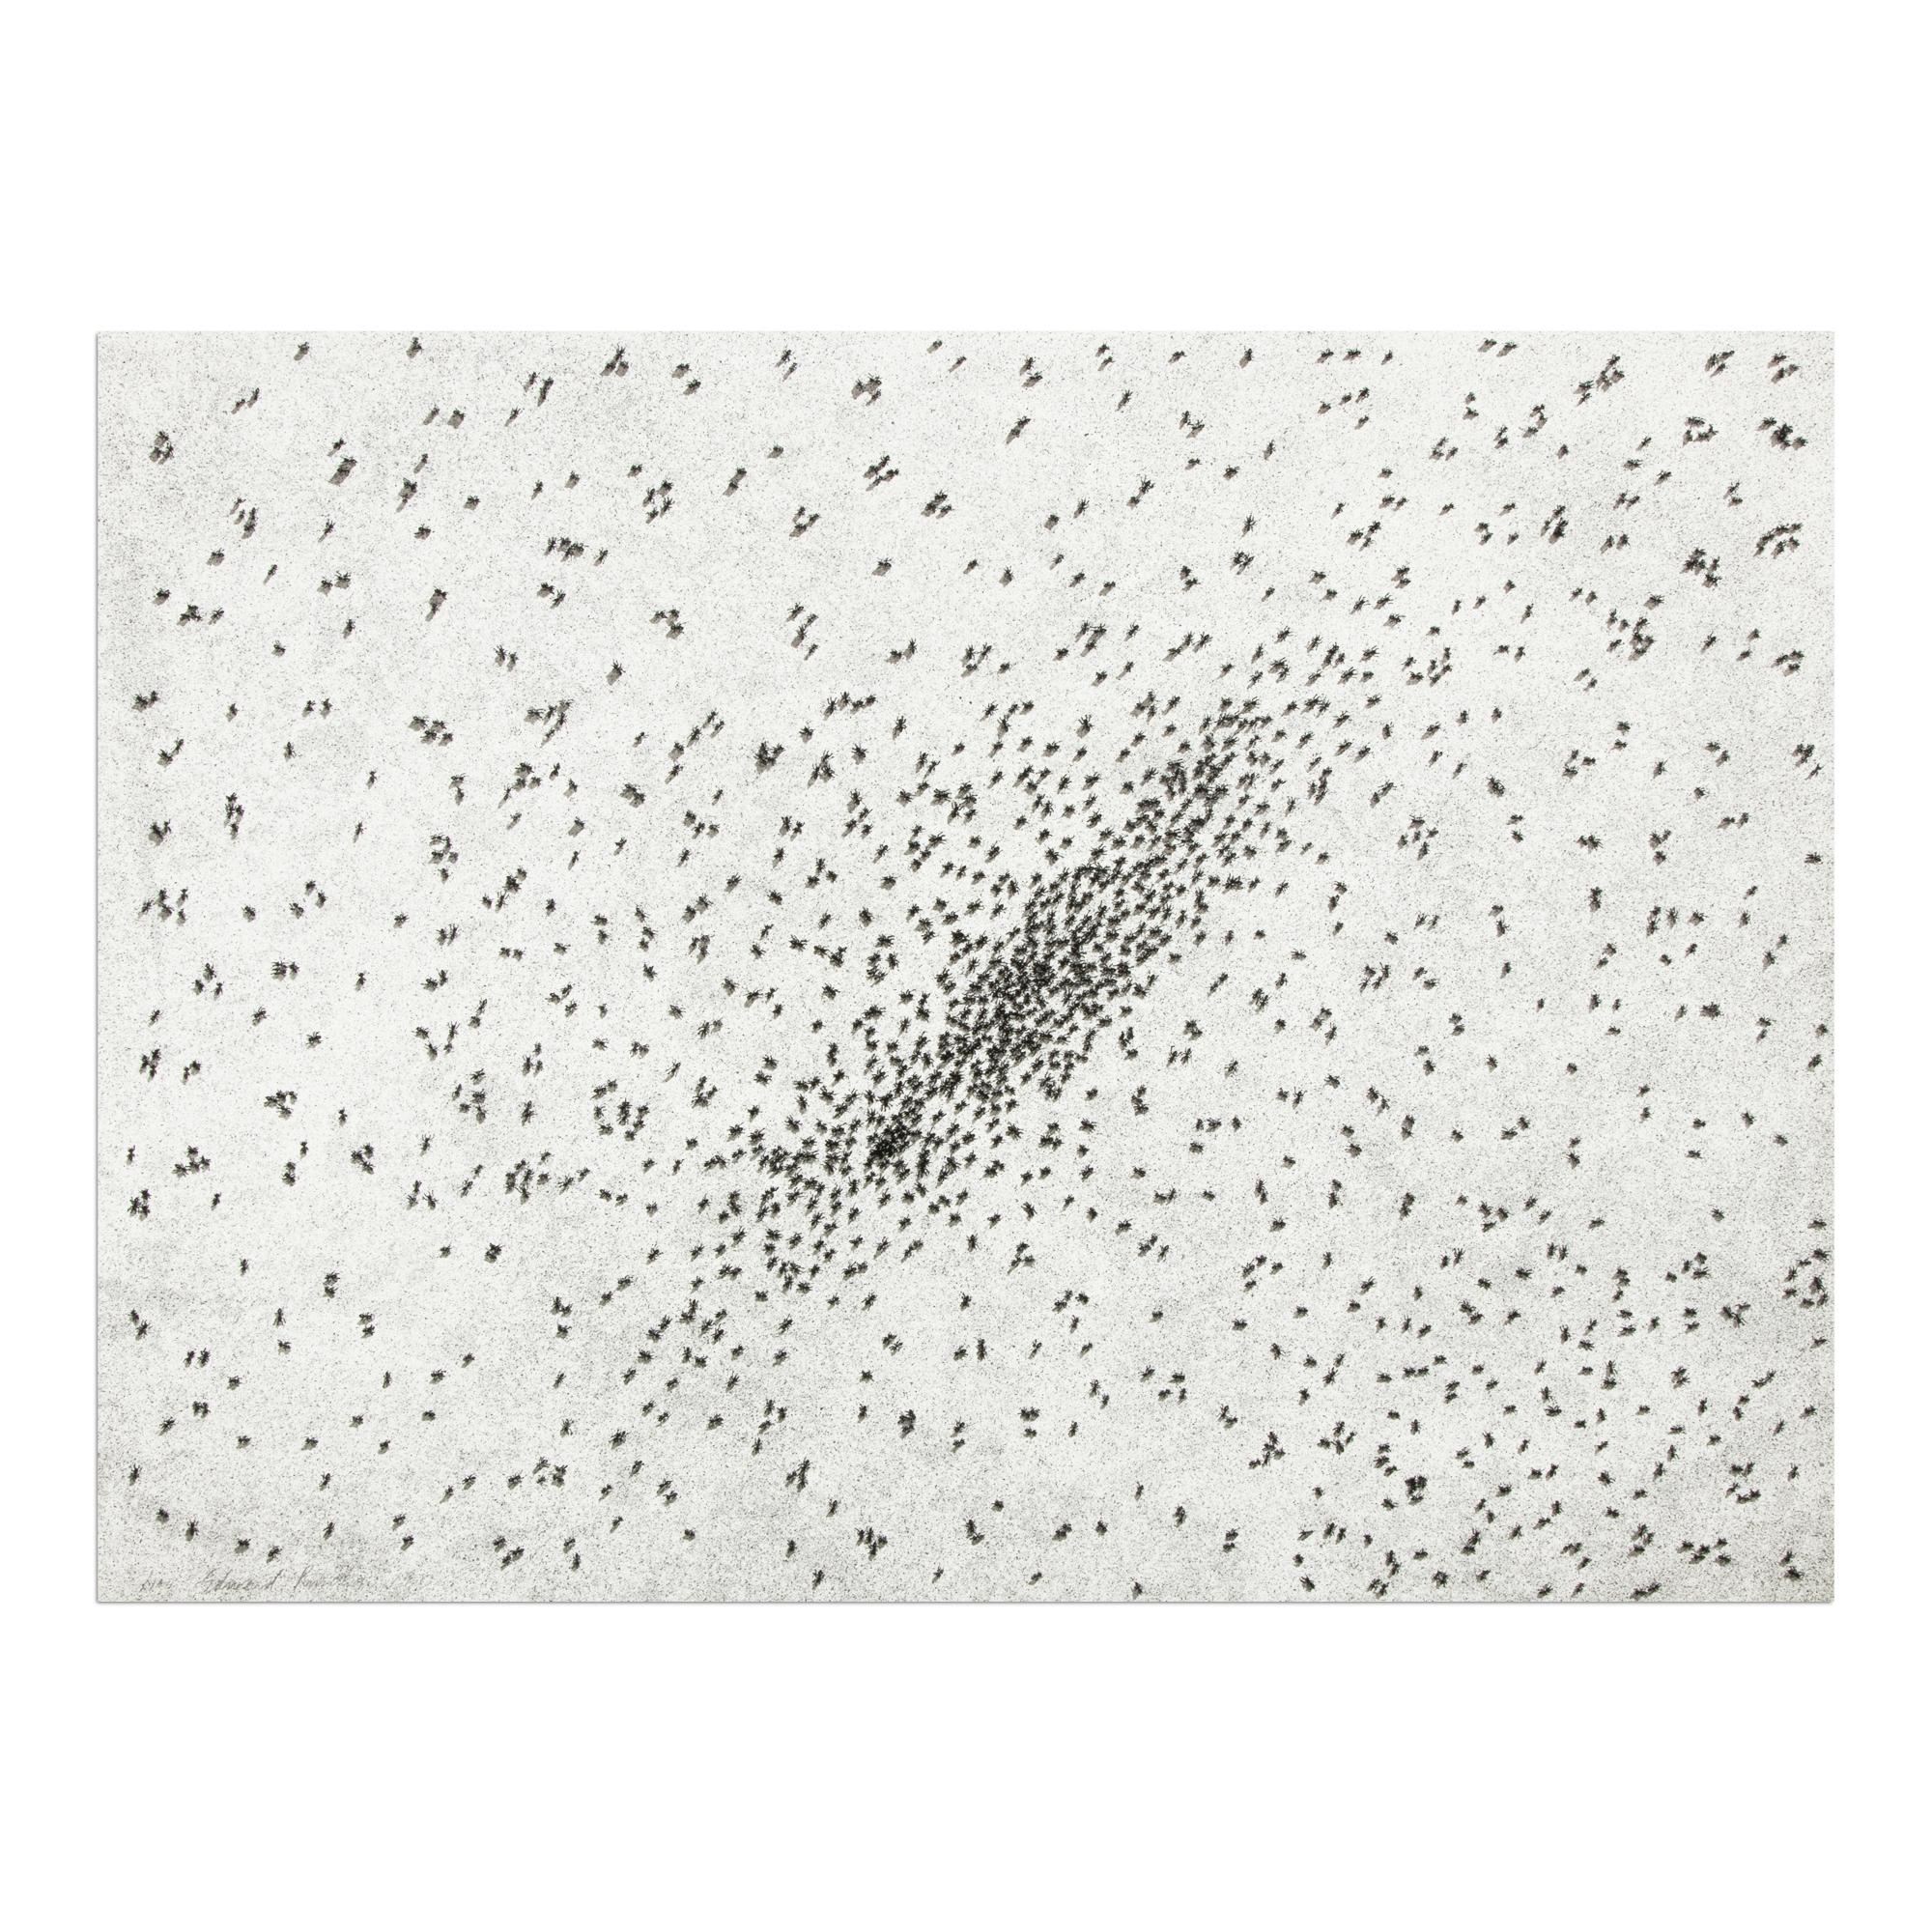 Ed Ruscha (Amerikaner, geboren 1937)
Insect Slant (Ameisen), aus Realität und Paradoxien, 1973
Medium: Lithographie und Siebdruck, auf Rives BFK Papier
Abmessungen: 55,9 x 76,2 cm (22 x 30 Zoll)
Auflage 100 + 25 Probedrucke des Künstlers: